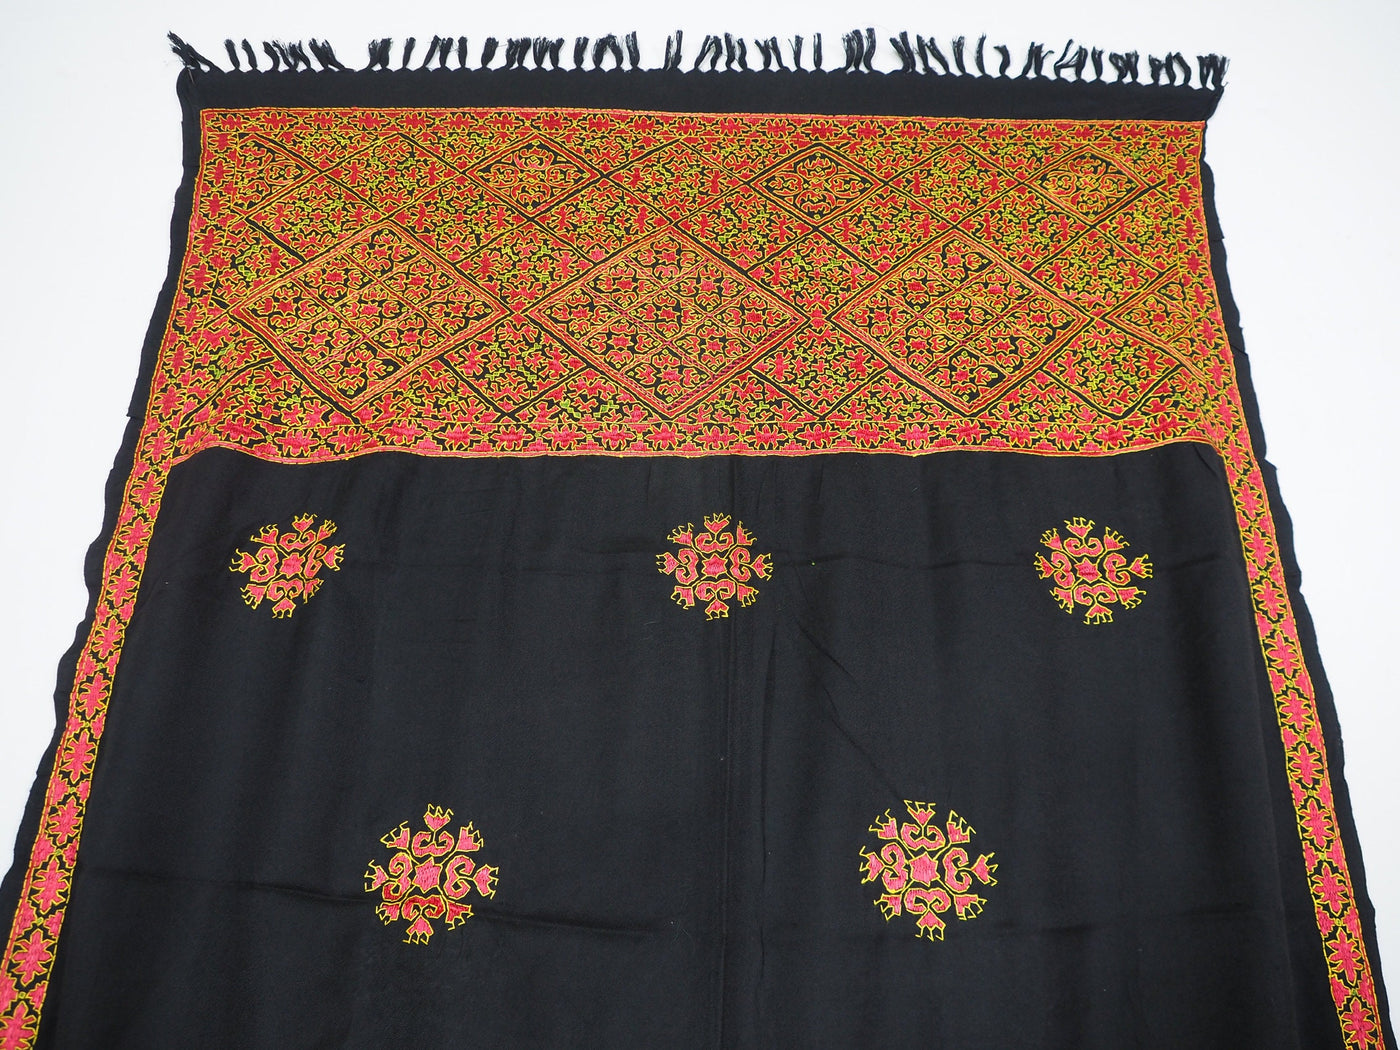 225x105 cm sehr seltener dekorative Seide bestickt Pulkari Schal Tuch Swat-Tal Pakistan  Afghanistan 20/B Textilien Orientsbazar   